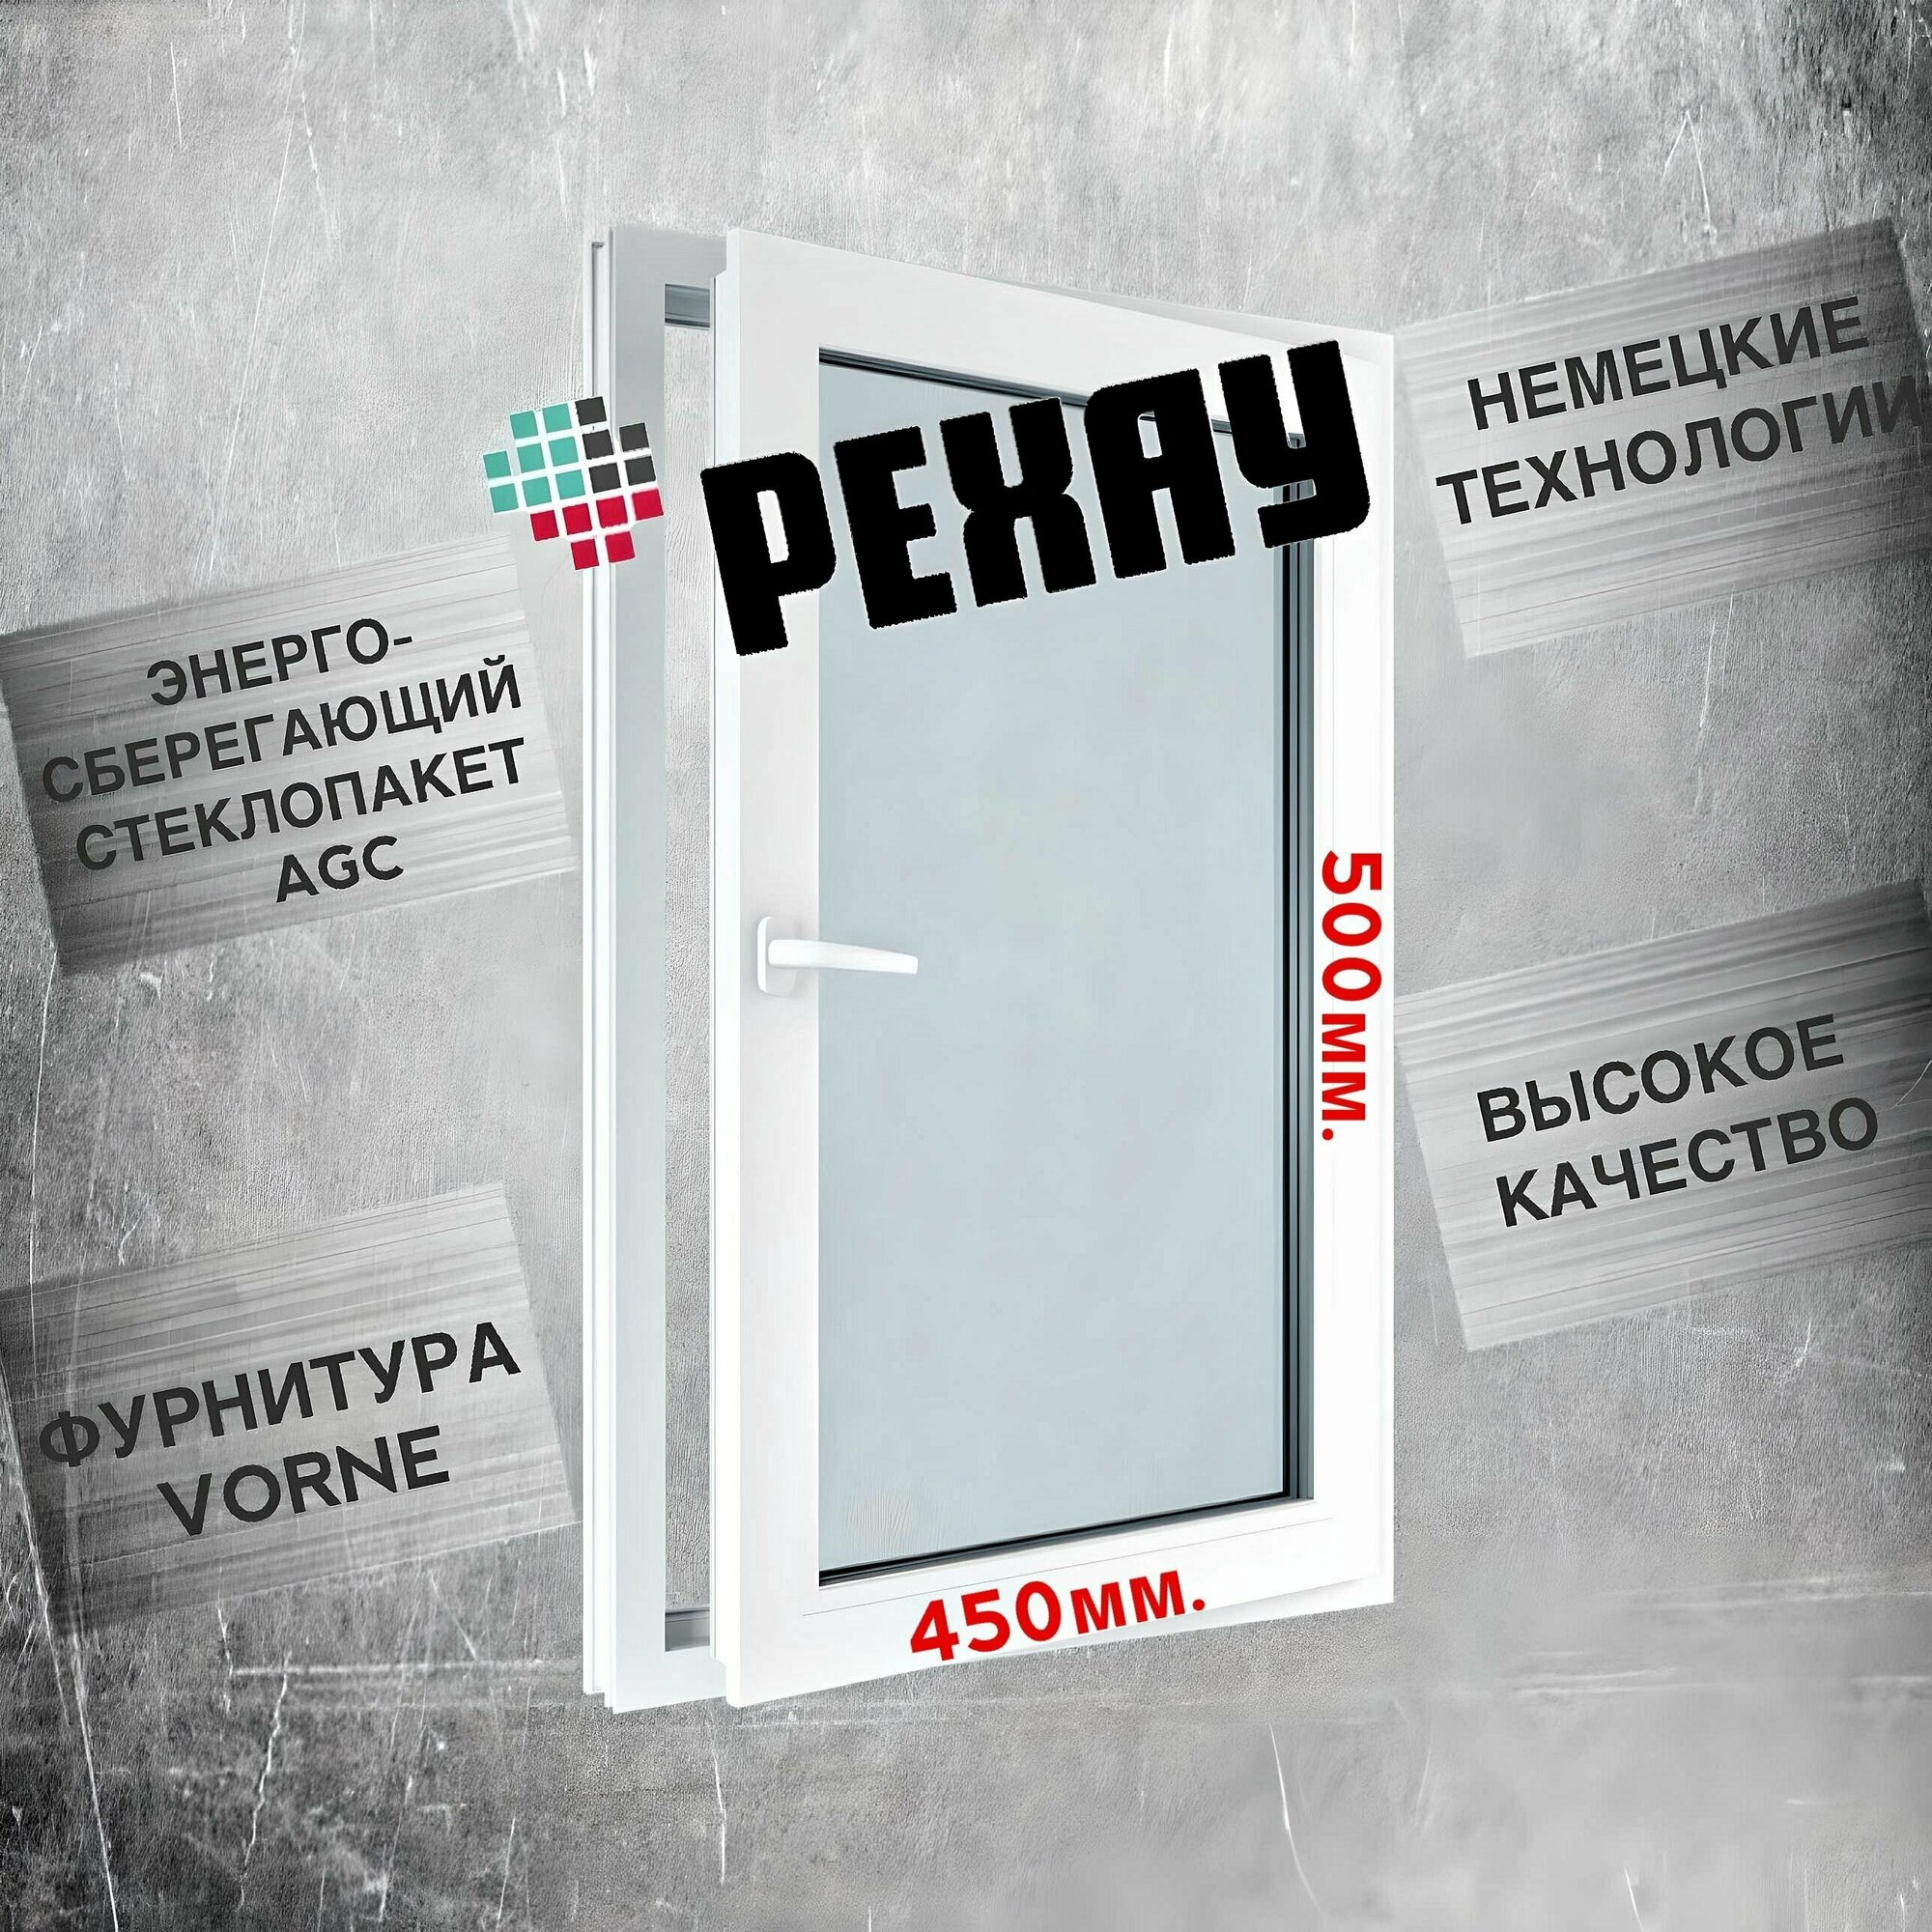 Окно РЕХАУ (500х450)мм, одностворчатое, поворотное, правое, энергосберегающий стеклопакет, фурнитура VORNE.